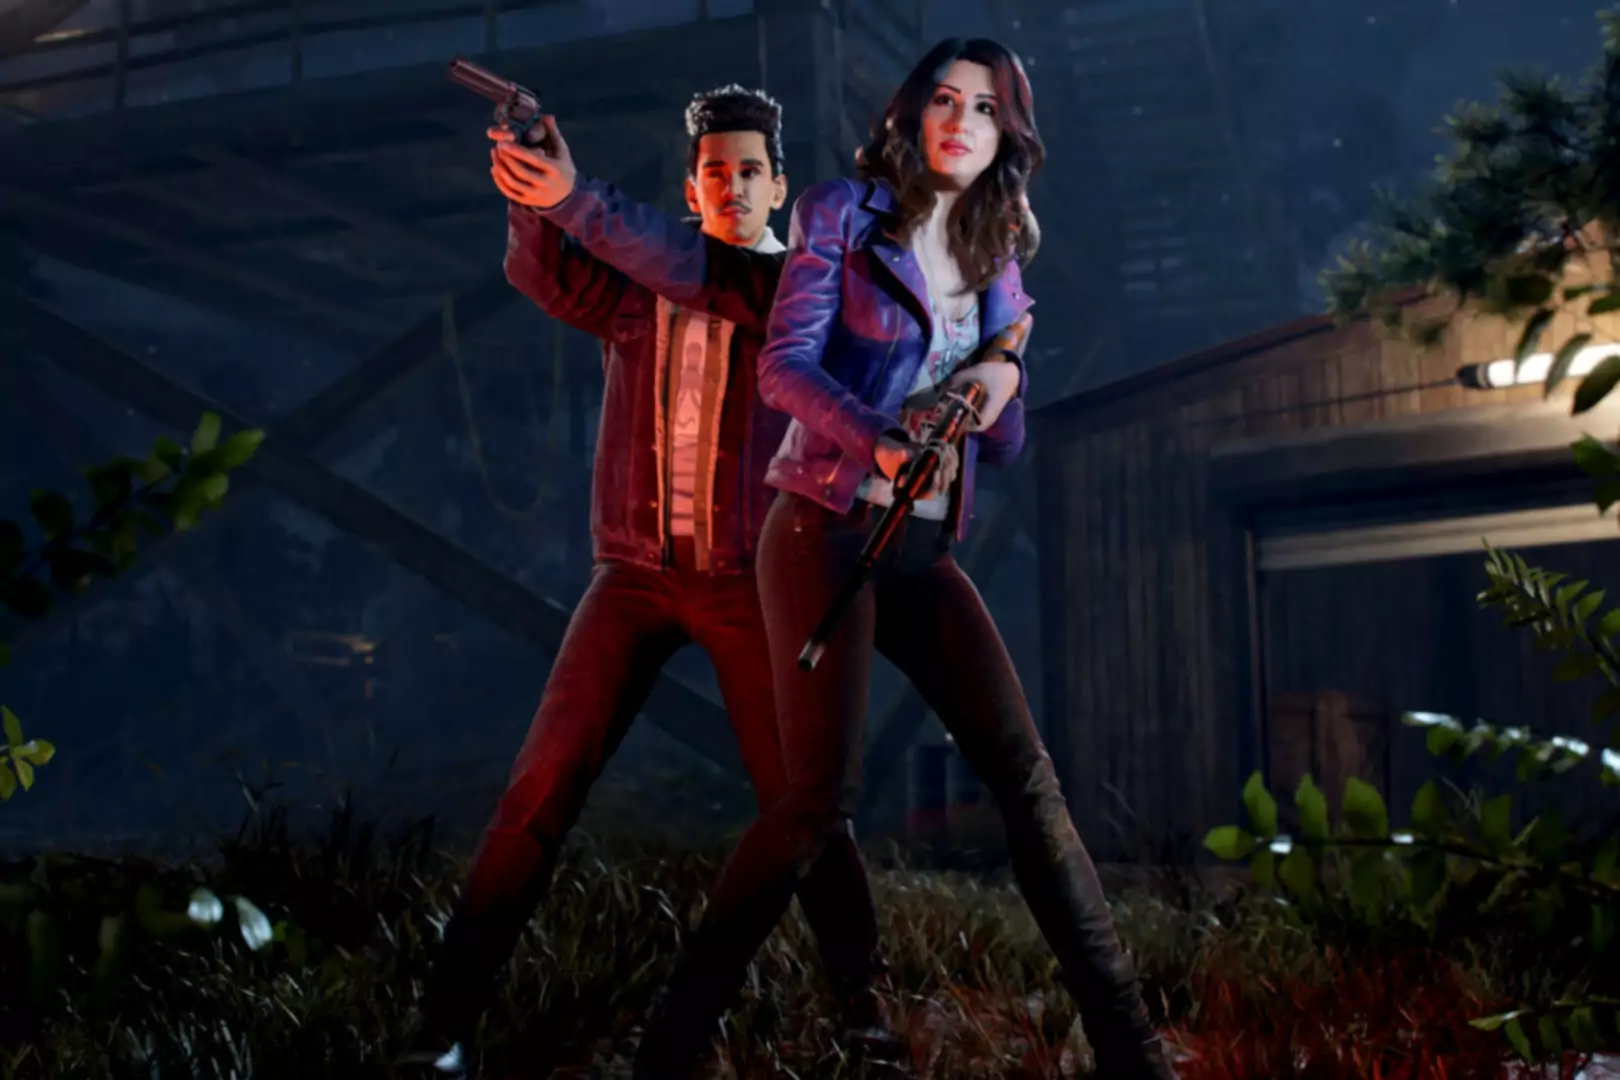 Capture d'écran de Evil Dead The Game montrant deux personnages pointant des armes dans l'obscurité.